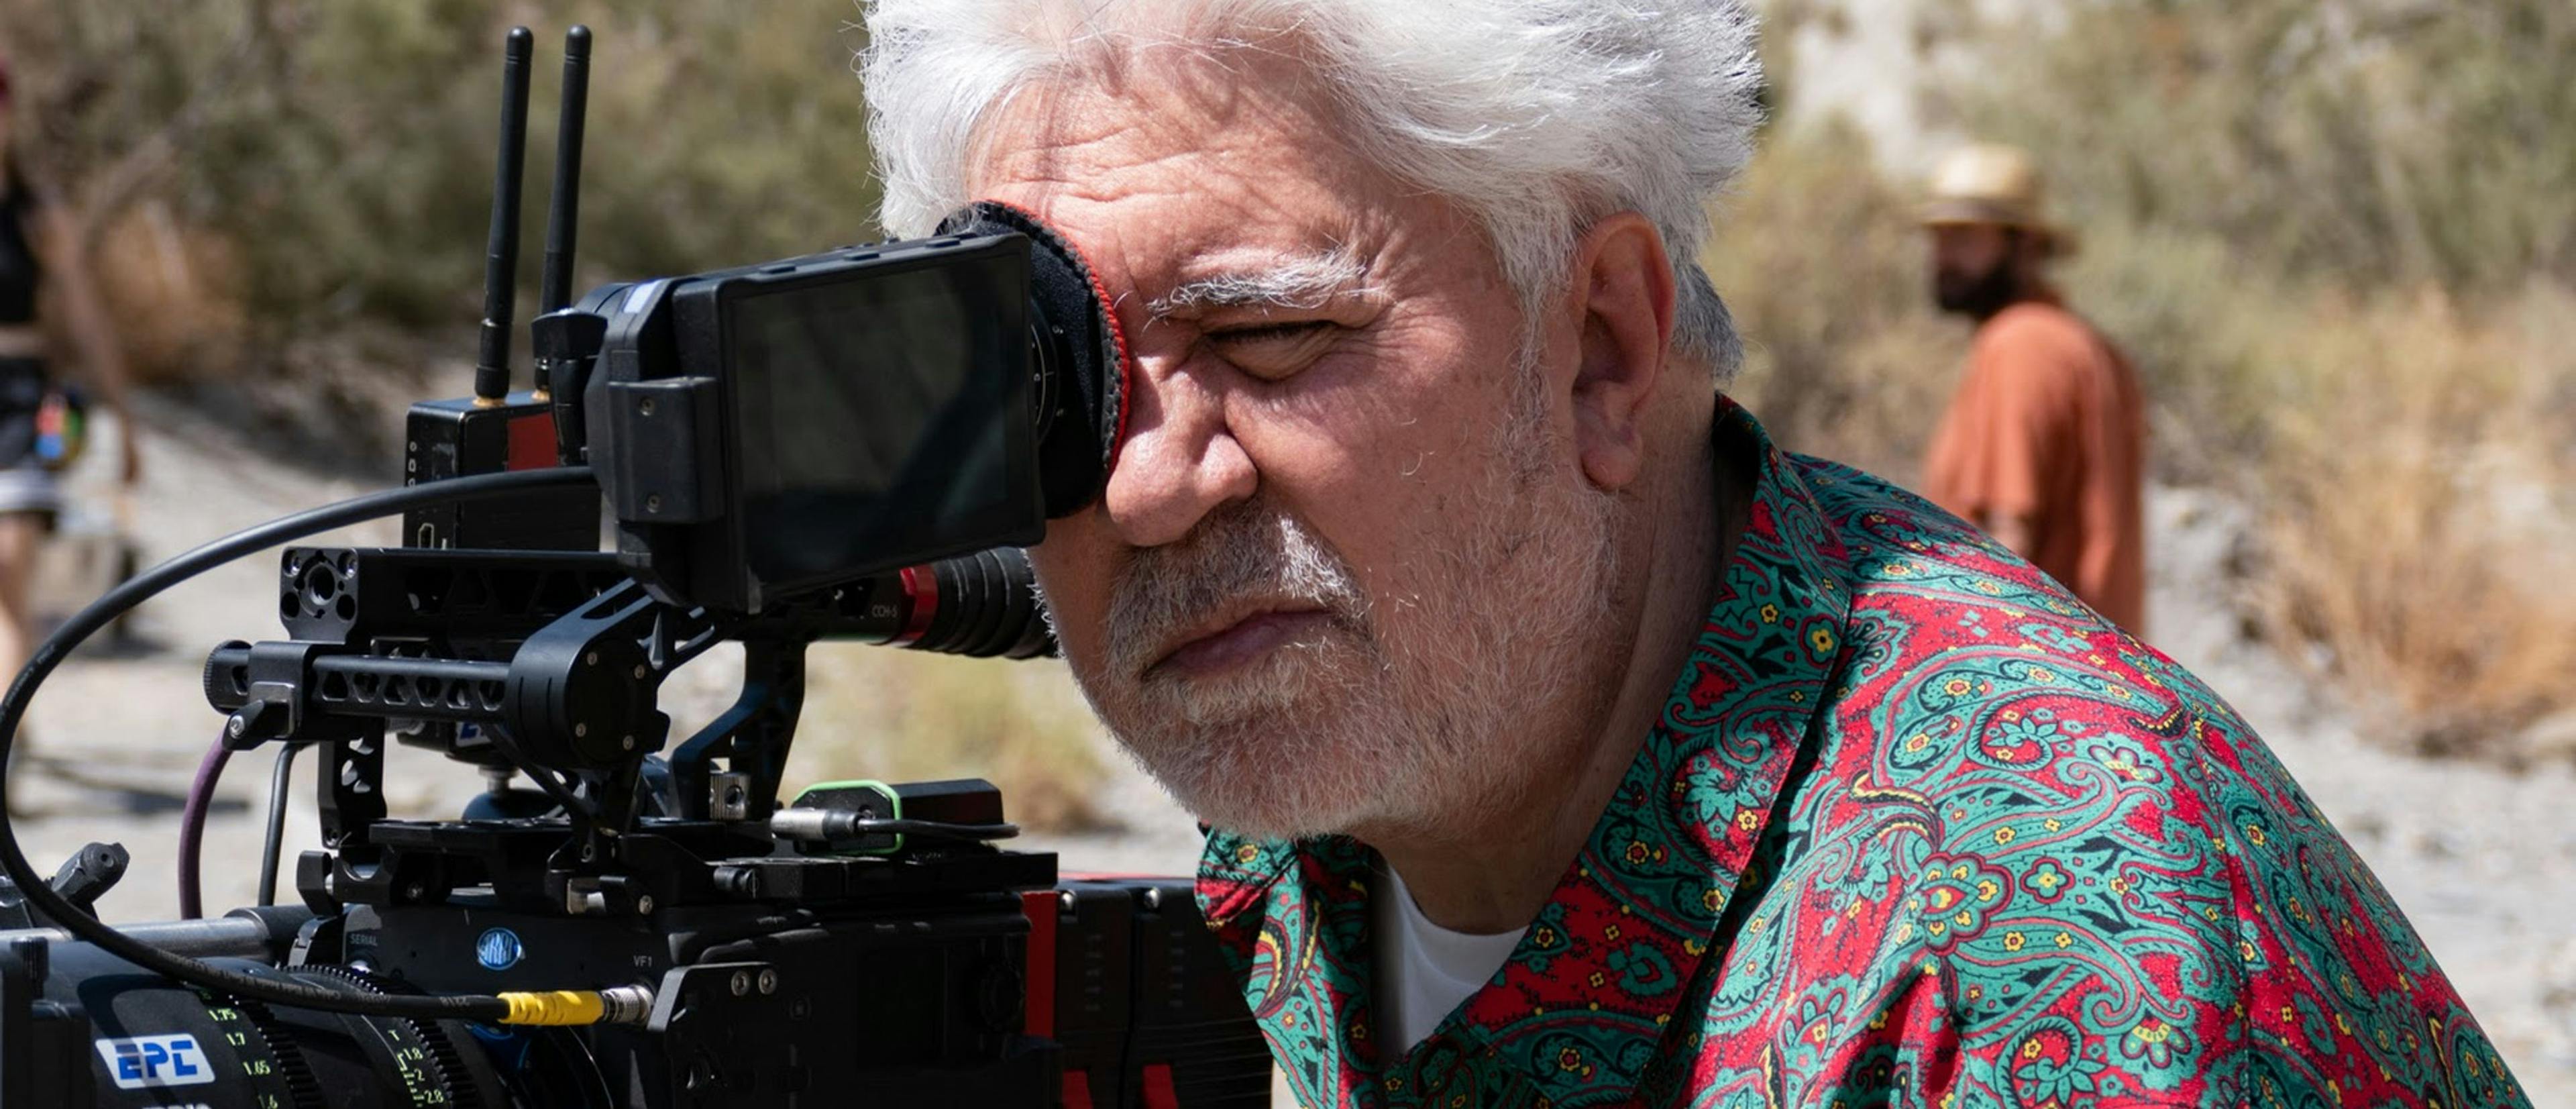 El director Pedro Almodóvar, durante el rodaje en Almería de su corto 'Extraña forma de vida'